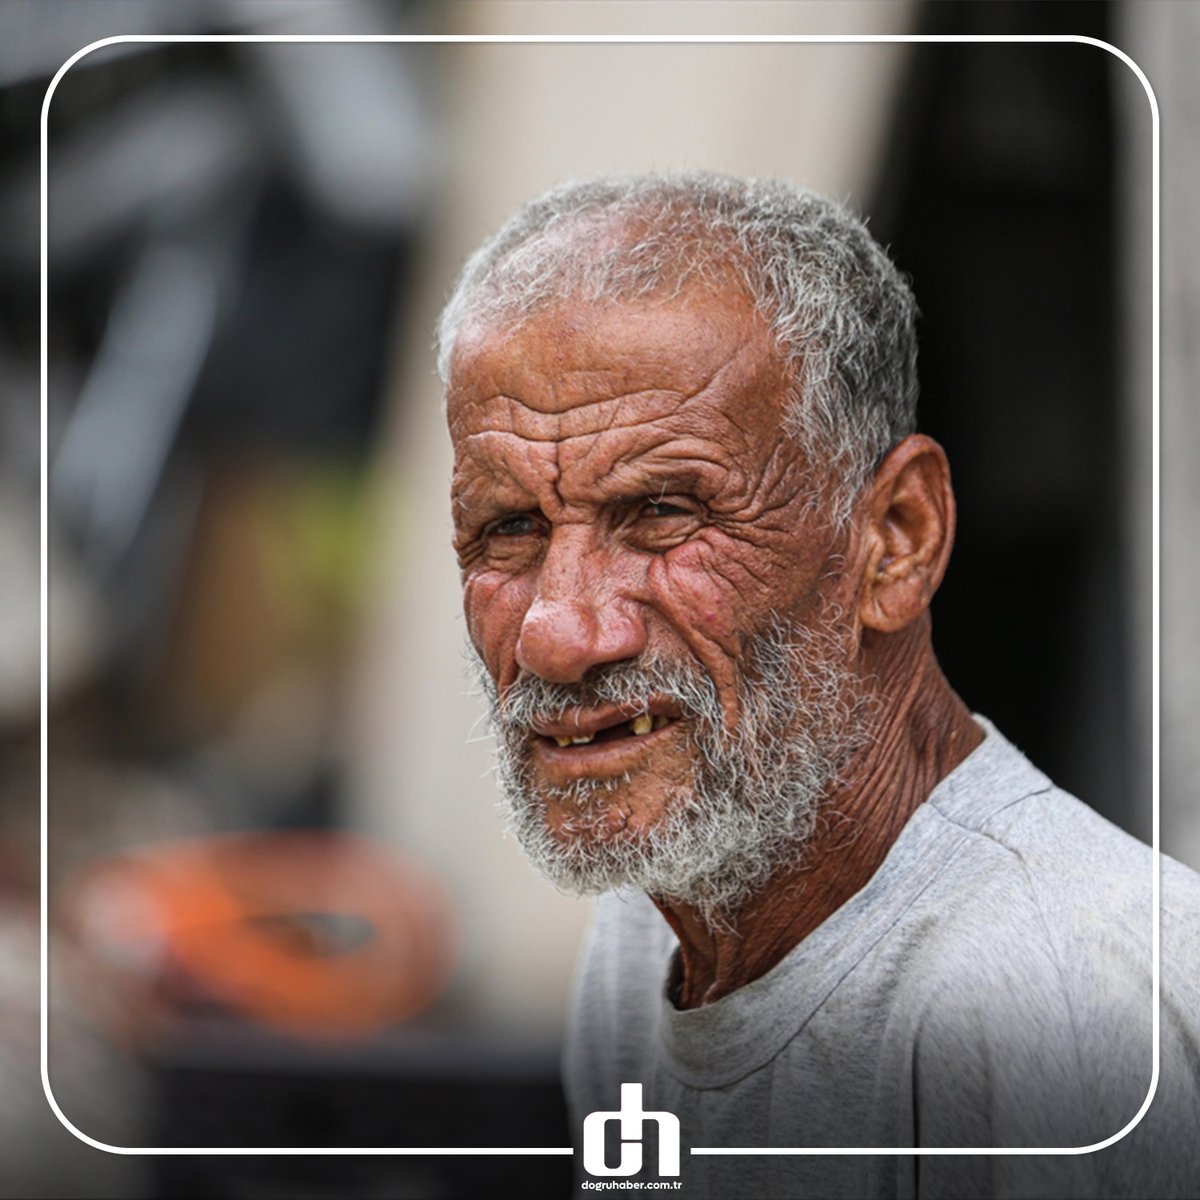 📌 İşgal saldırıları sonucu birçok yakını ölen, geçim kaynağı olan tarım arazisini de kaybeden 70 yaşındaki kanser hastası Abdullah Al-Arair, ailesinin geri kalan üyeleriyle birlikte Gazze kentindeki bir konteynerde yaşıyor.